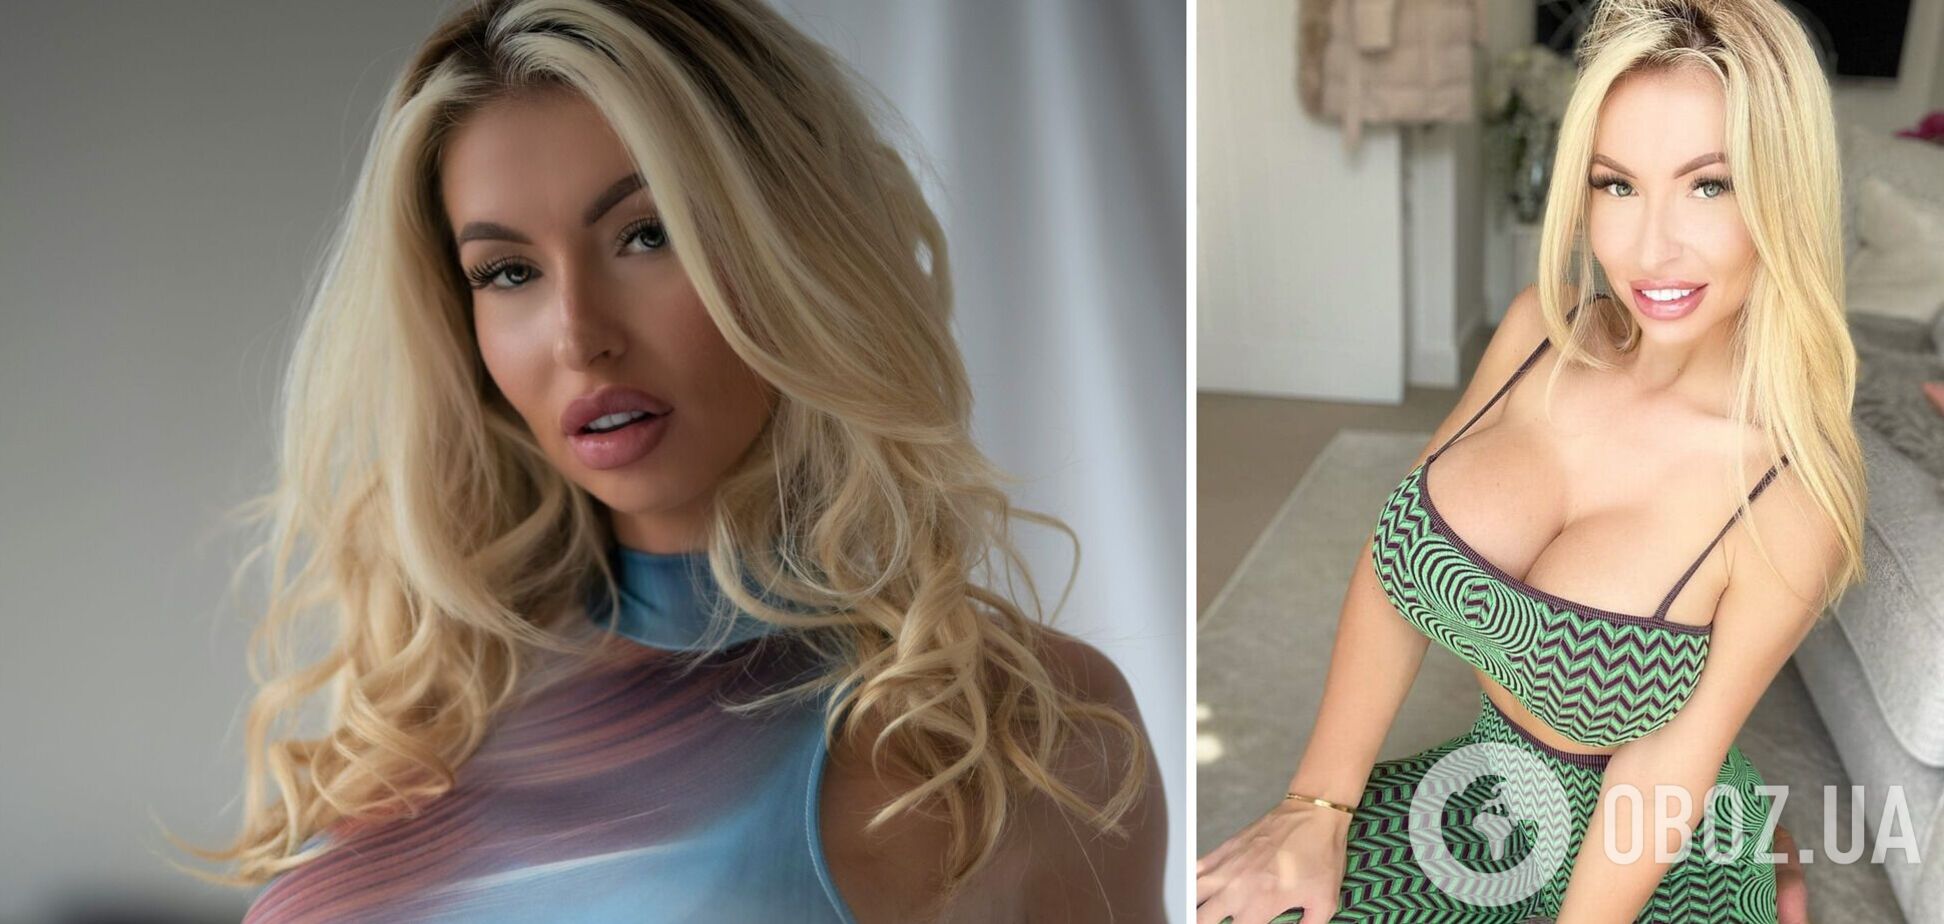 Англичанка потратила более $40 тысяч, чтобы стать Барби. Фото до и после